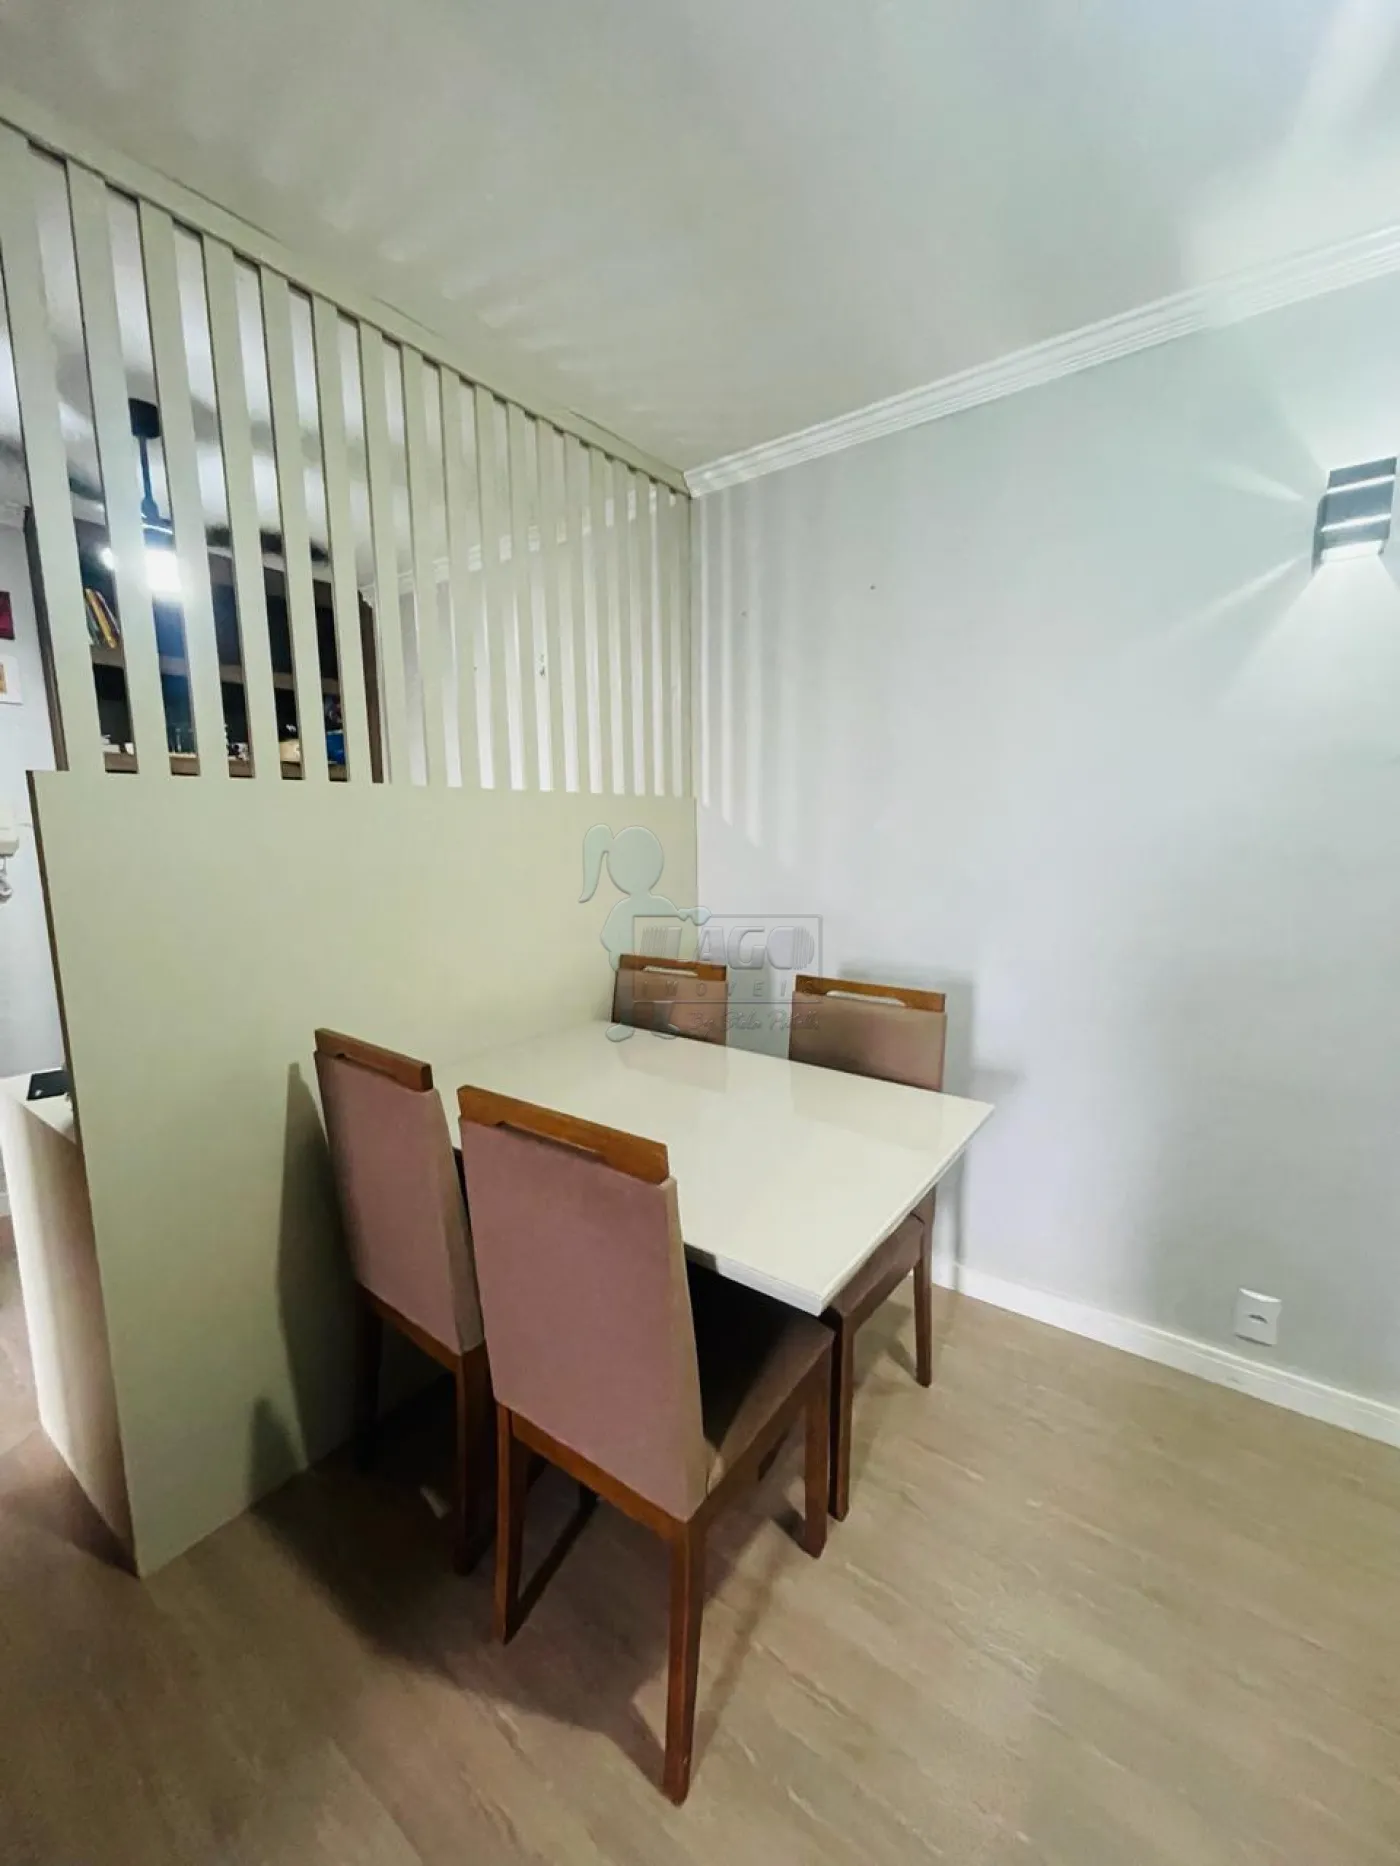 Alugar Apartamentos / Padrão em Ribeirão Preto R$ 100,00 - Foto 6